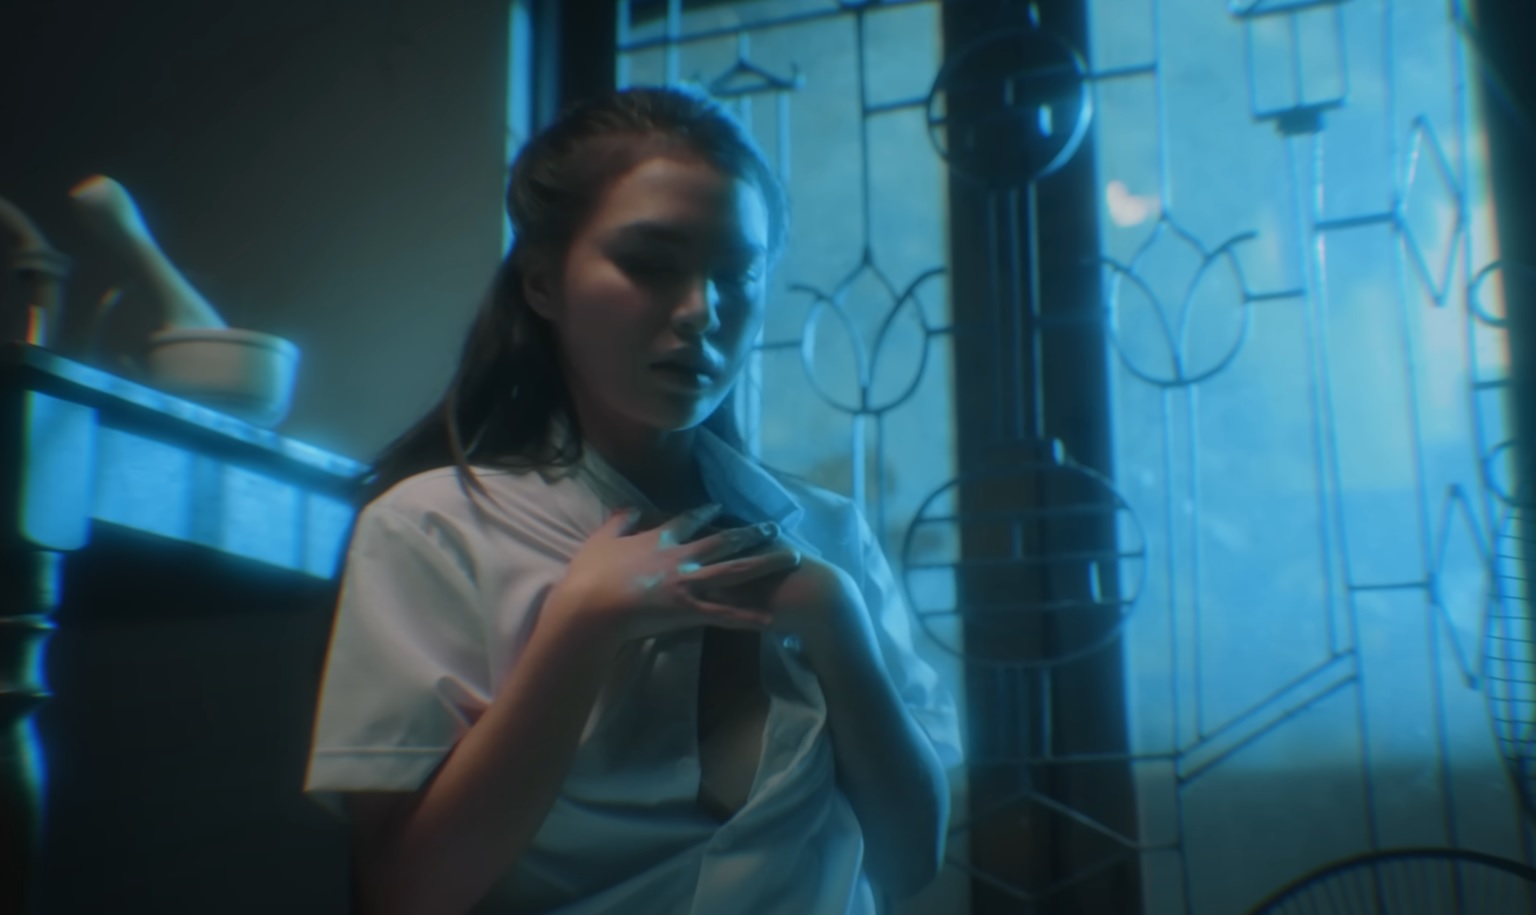 “Vụn vỡ” Hồ Quang Hiếu 3 Hồ Quang Hiếu nói gì về cảnh diễn viên nữ lộ ngực trong MV mới